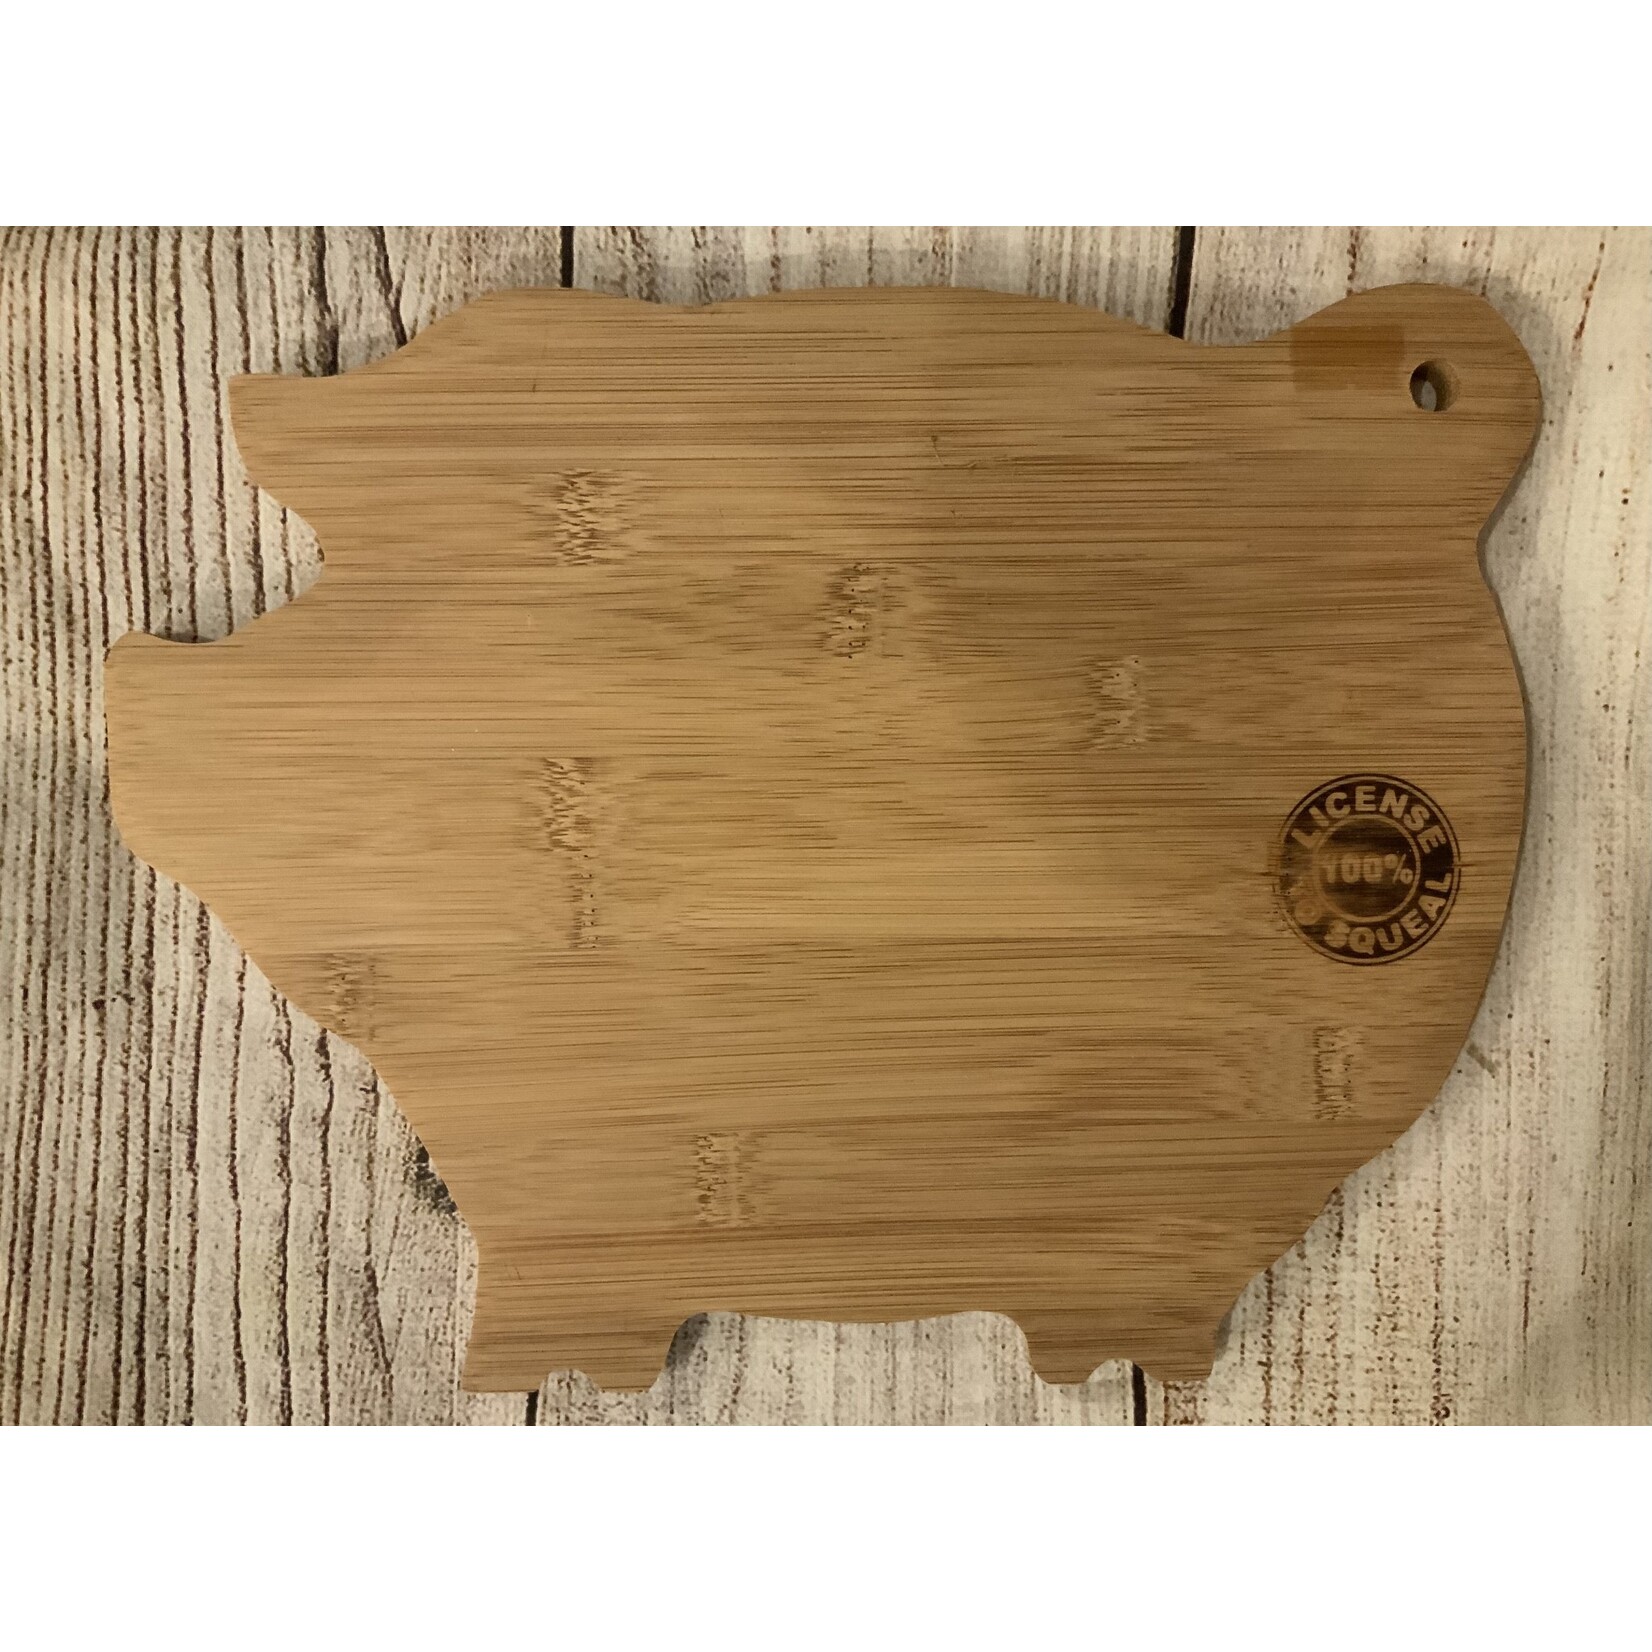 DEI Wood Pig Cutting Board